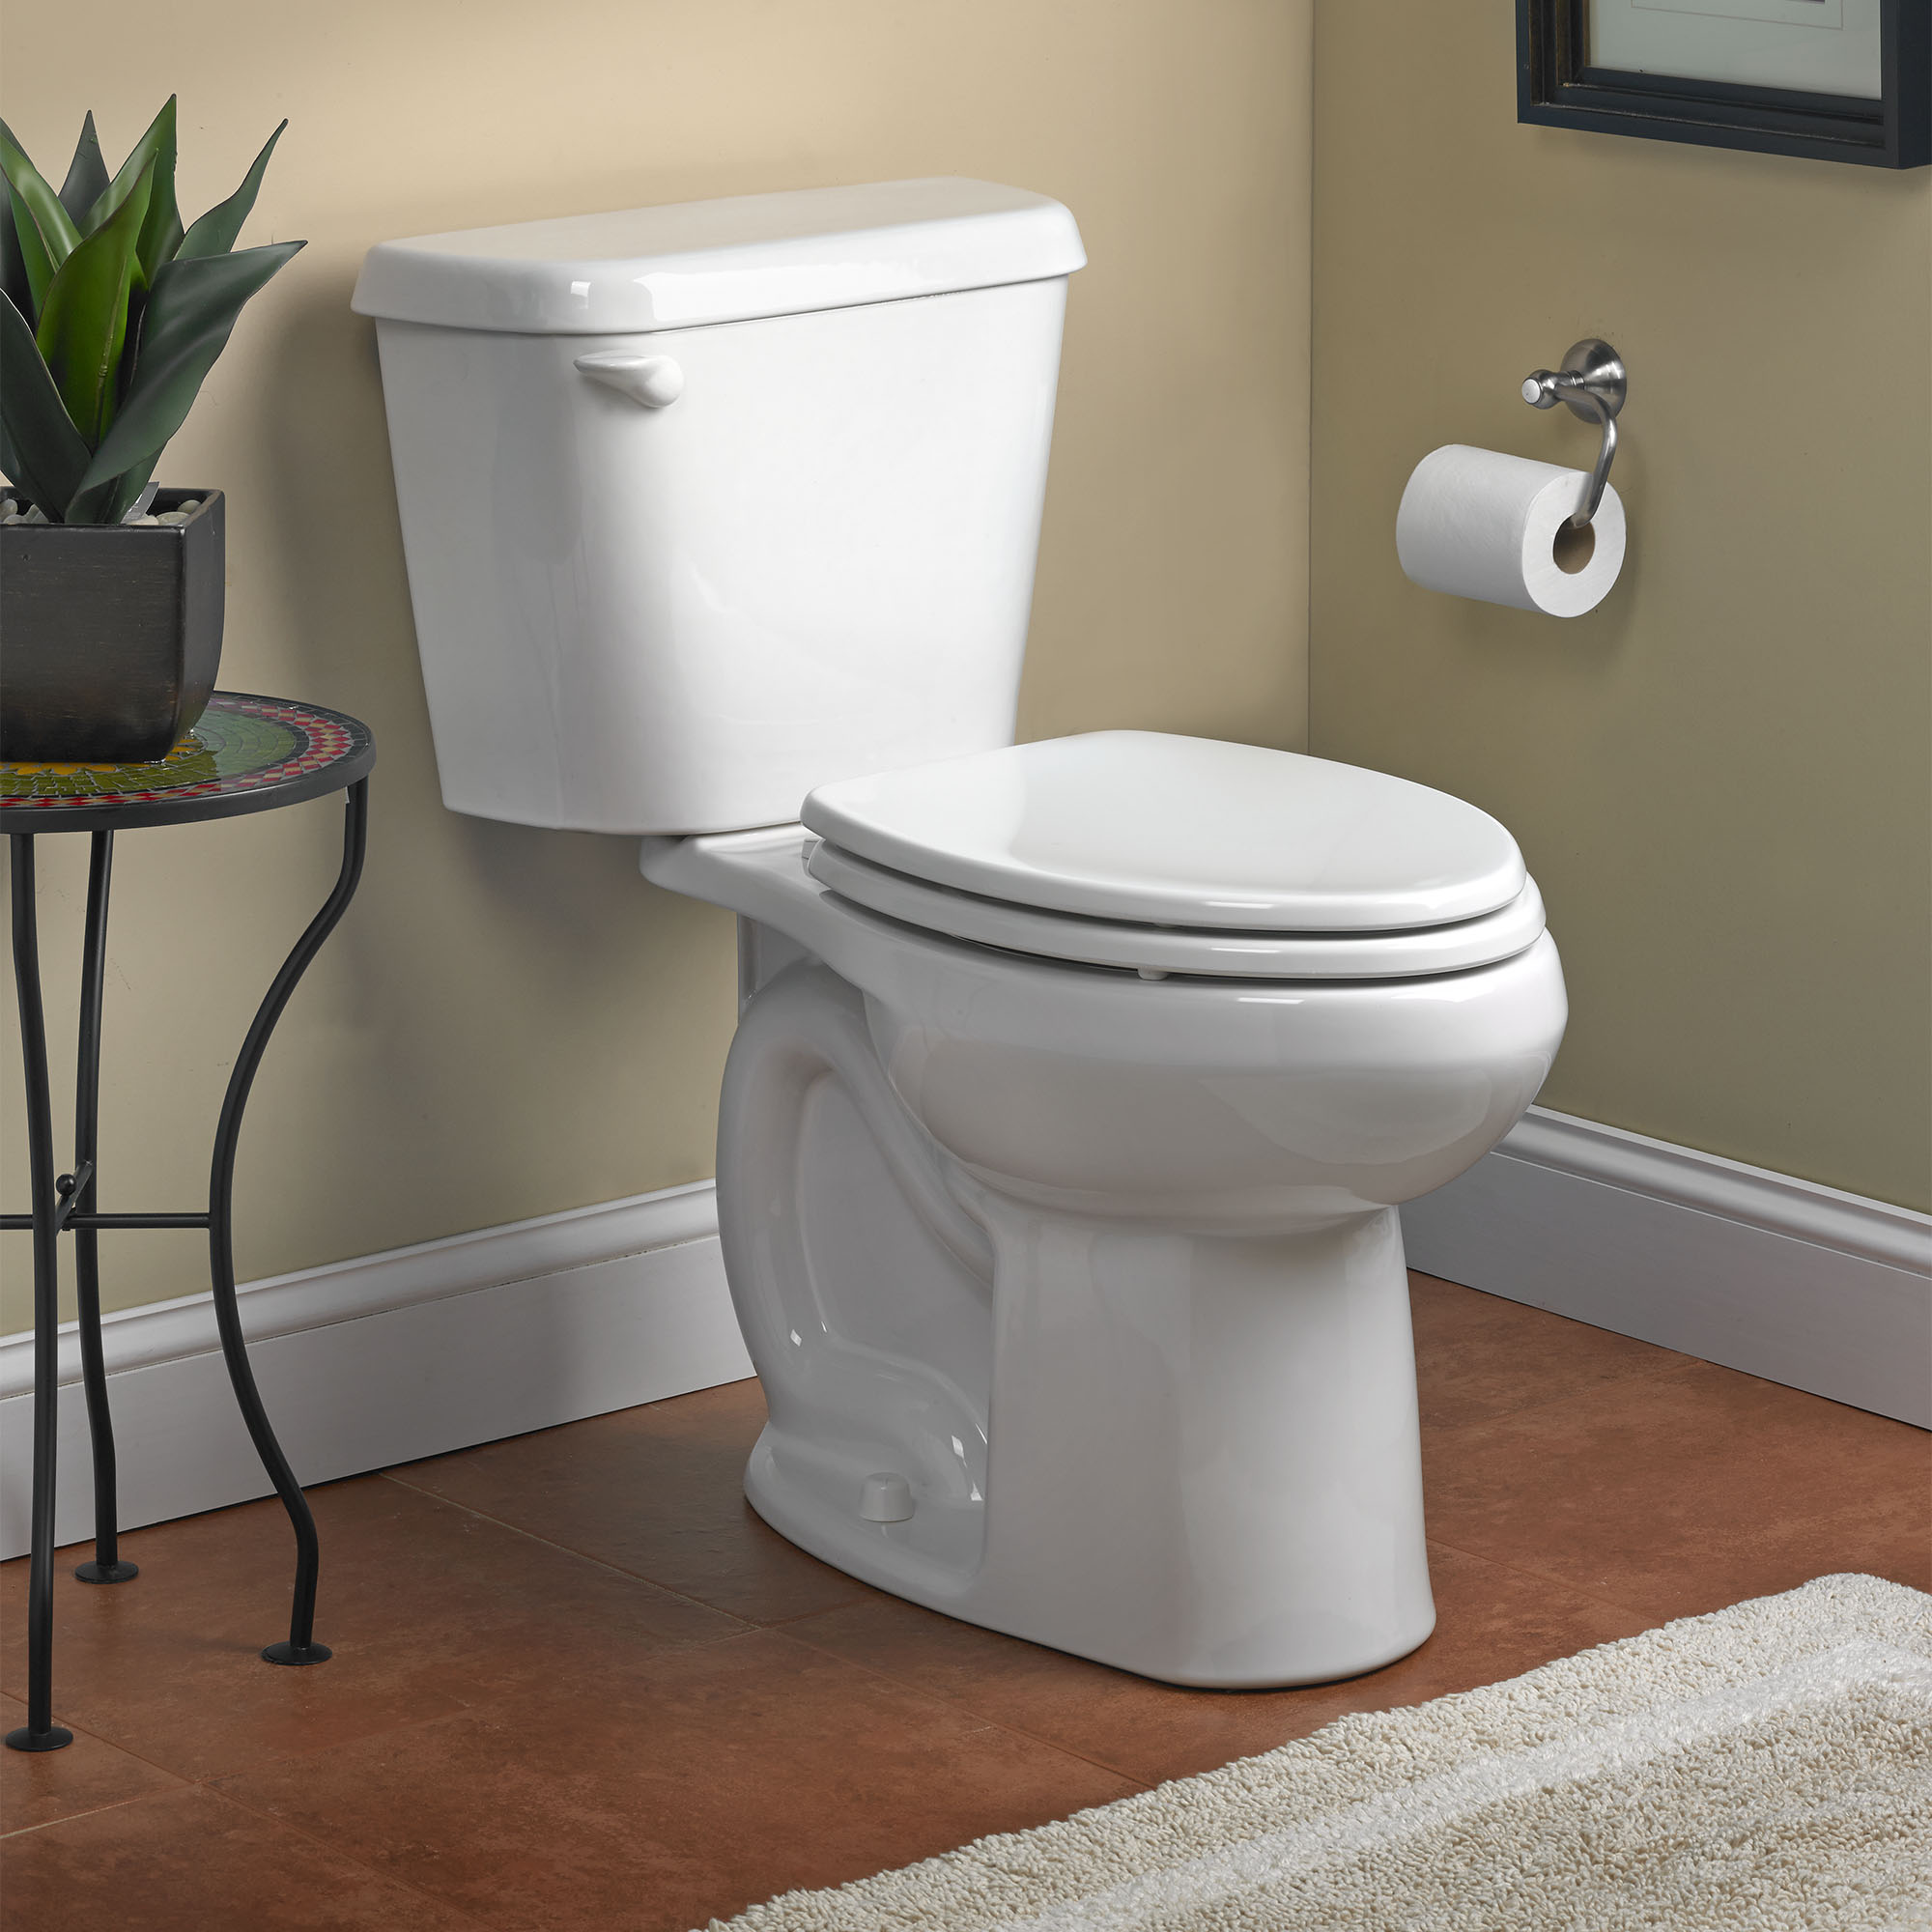 Toilette Colony, 2 pièces, 1,28 gpc/4,8 lpc,  à cuvette allongée à hauteur régulière, à encastrer 10 po, sans siège